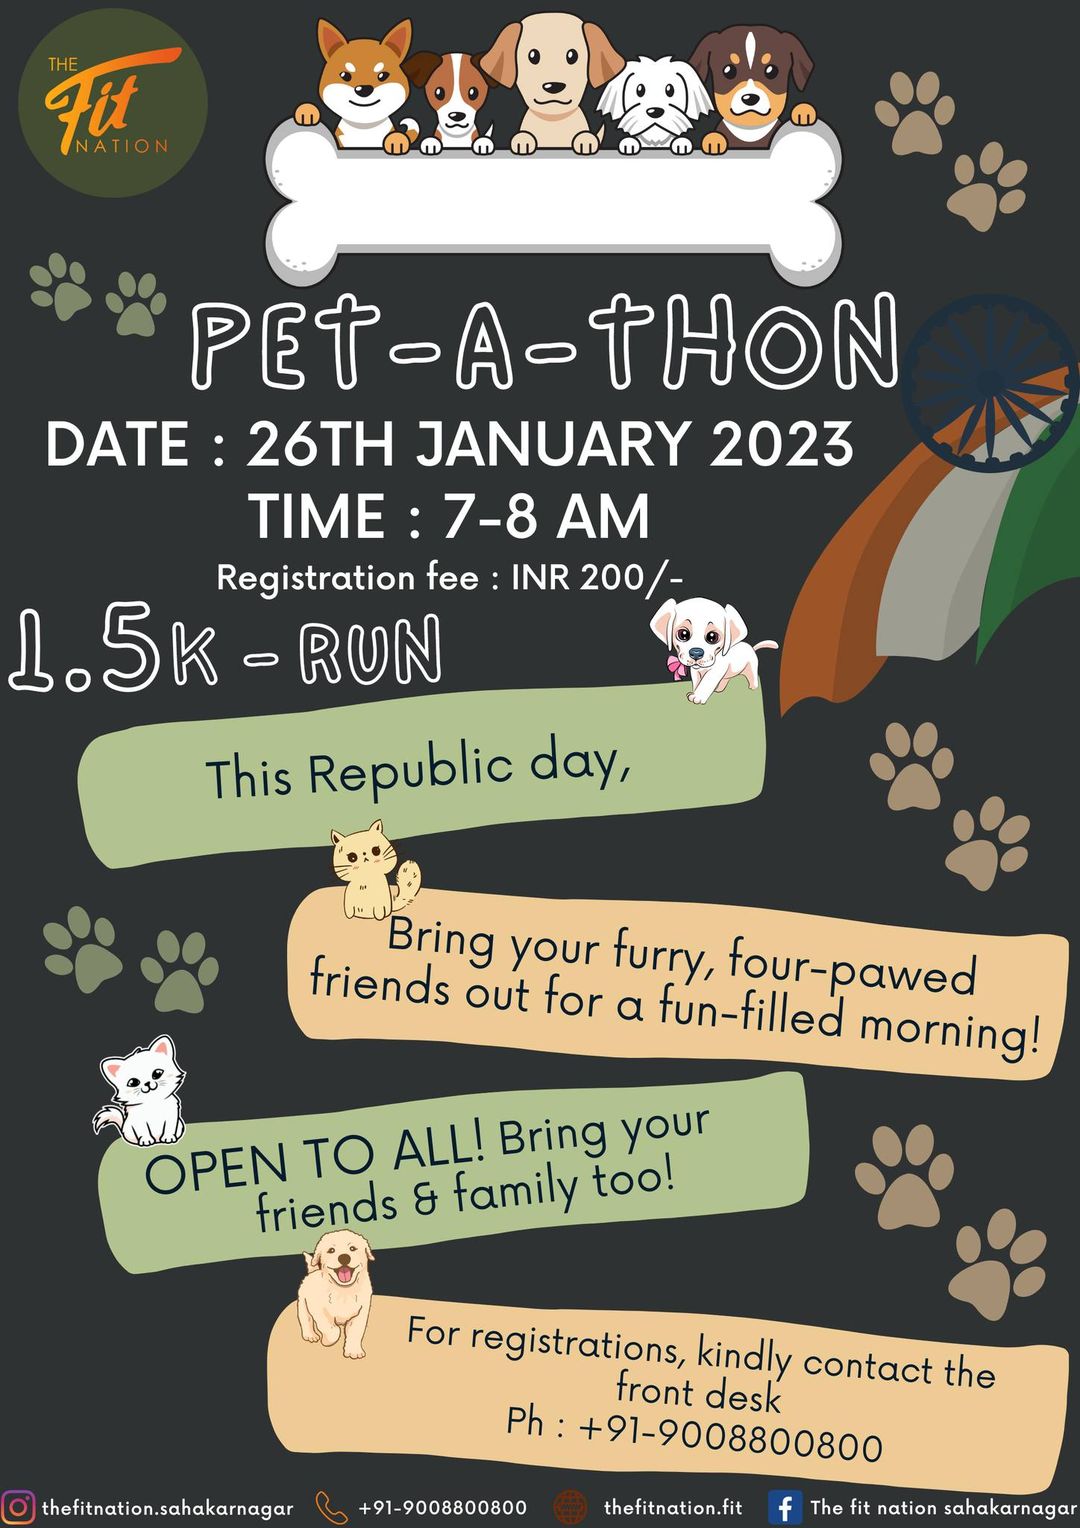 The Fit Nation_Petathon January 2023_petathon